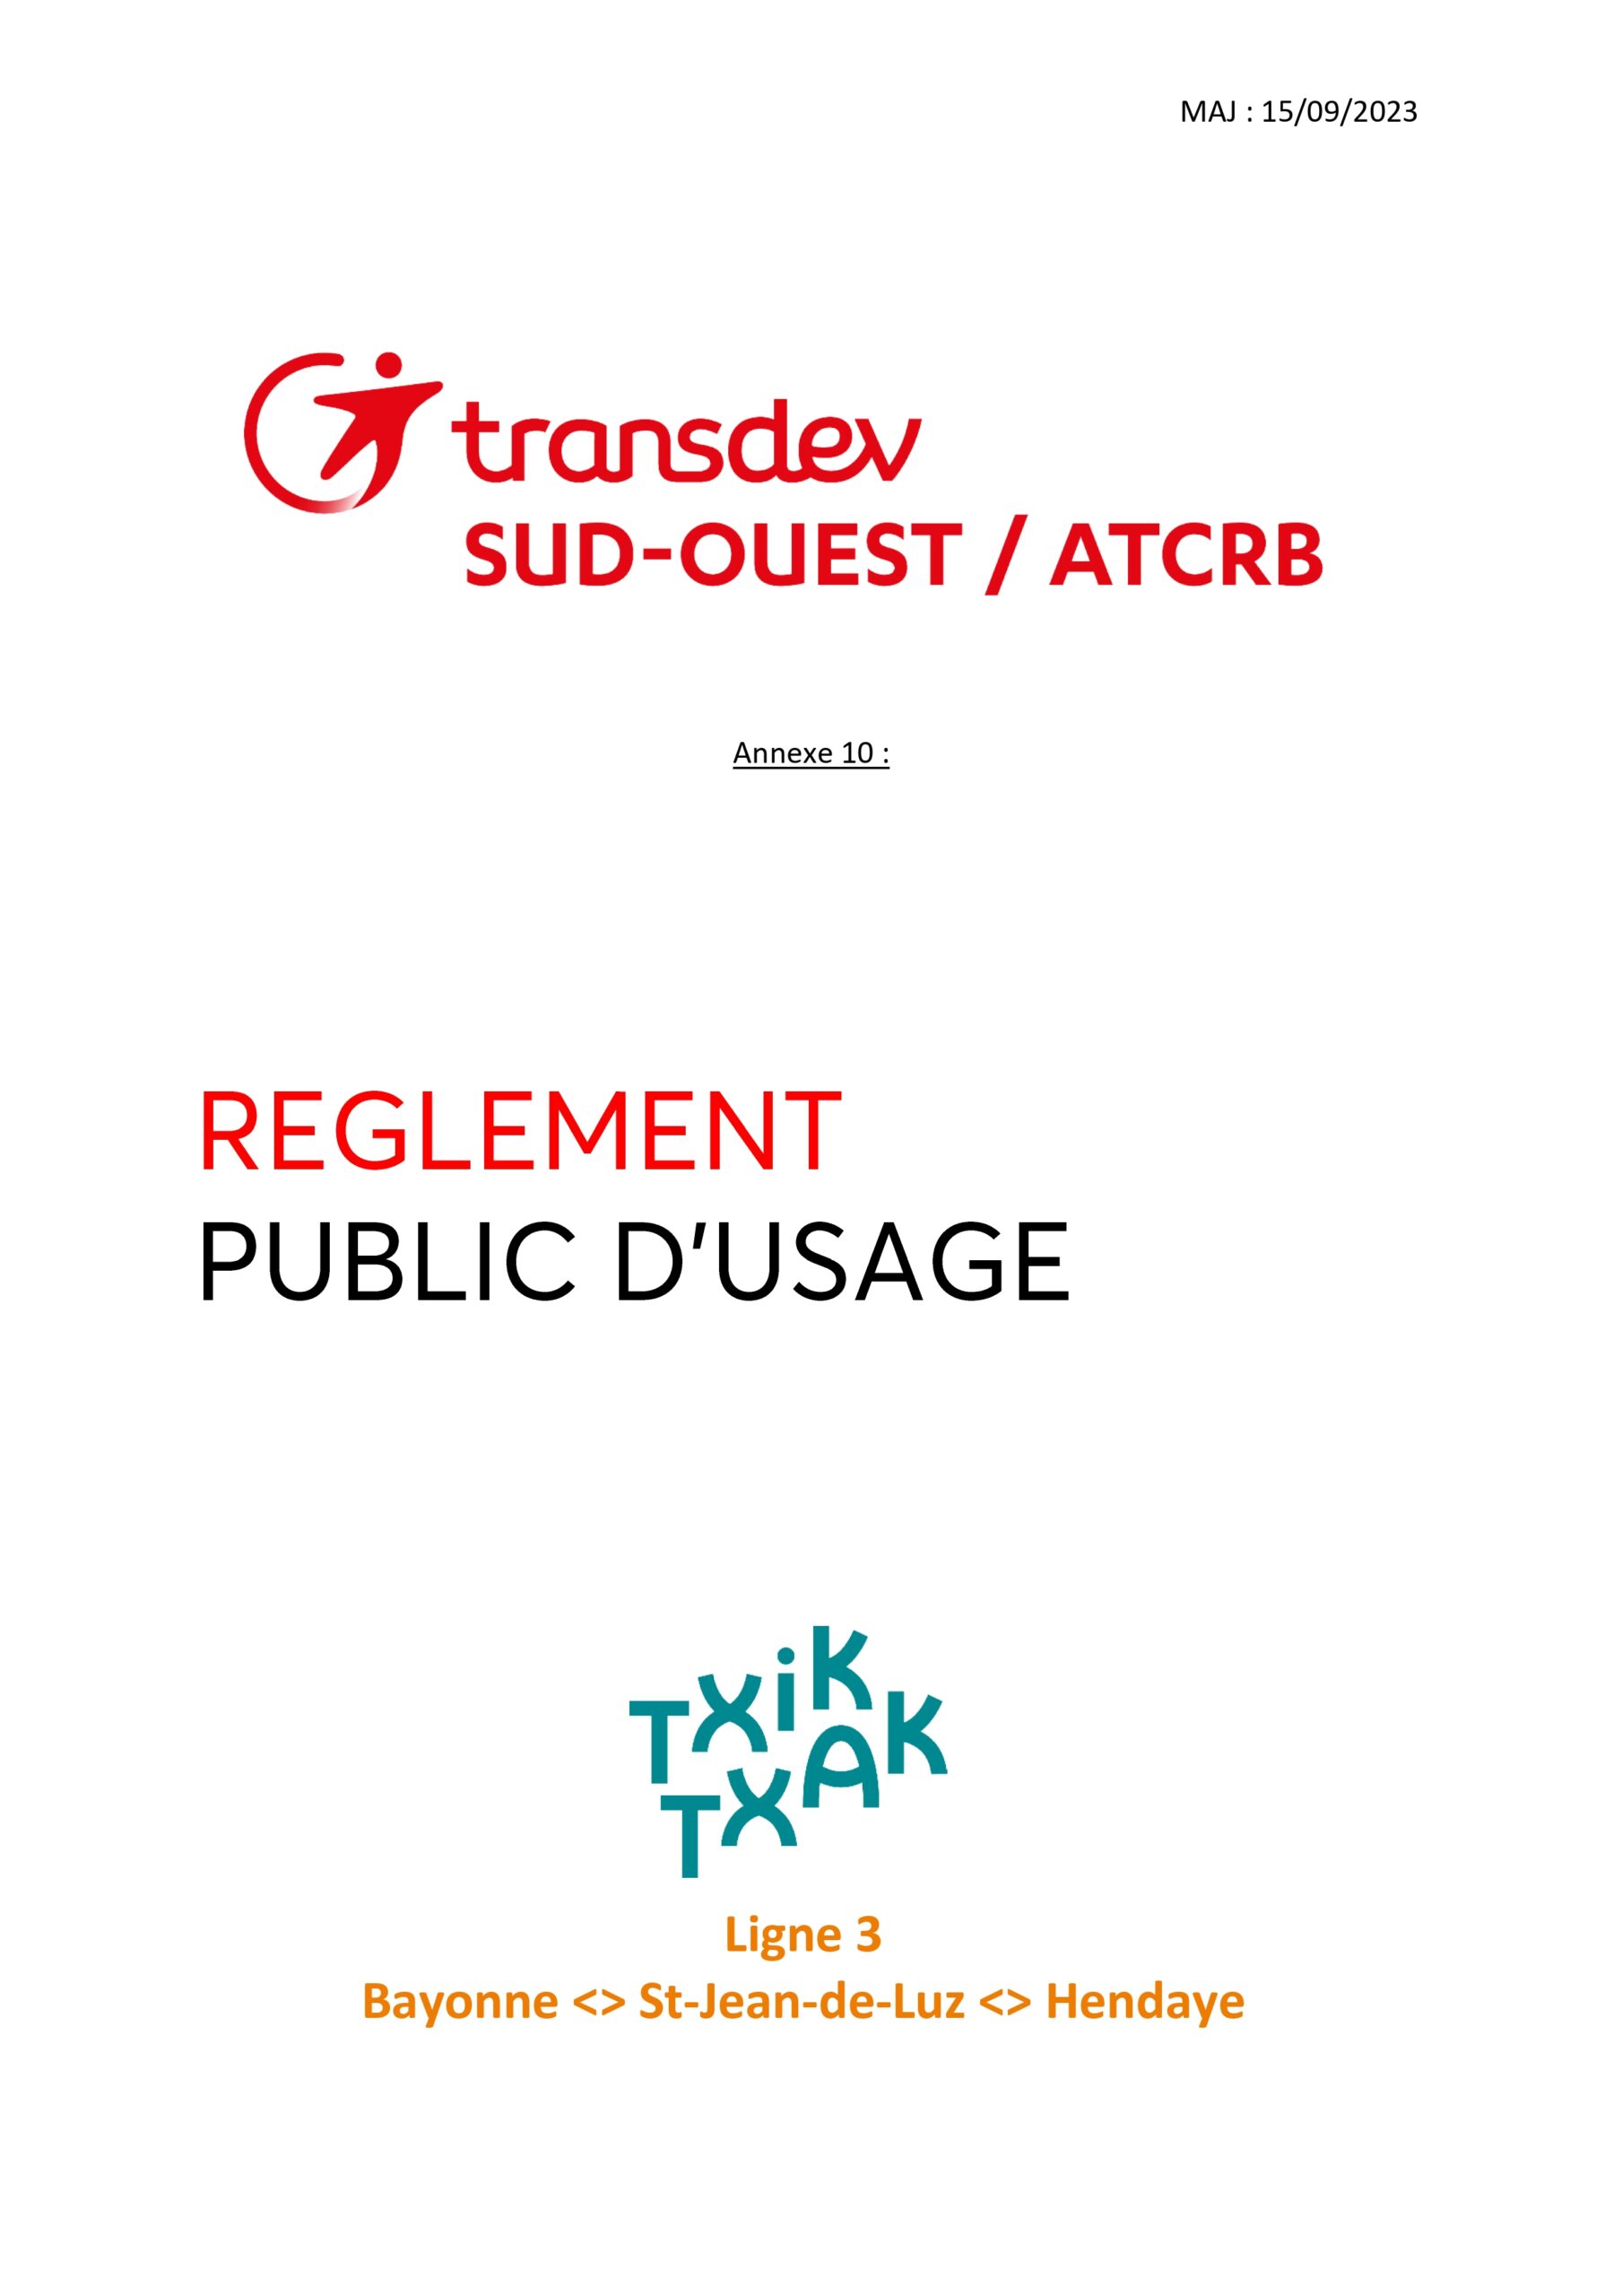 Transdev sud-ouest/ATCRB annexe 10 : Reglement public d'usage TXIK TXAK Ligne 3 Bayonne - Saint-Jean-de-Luz - Hendaye